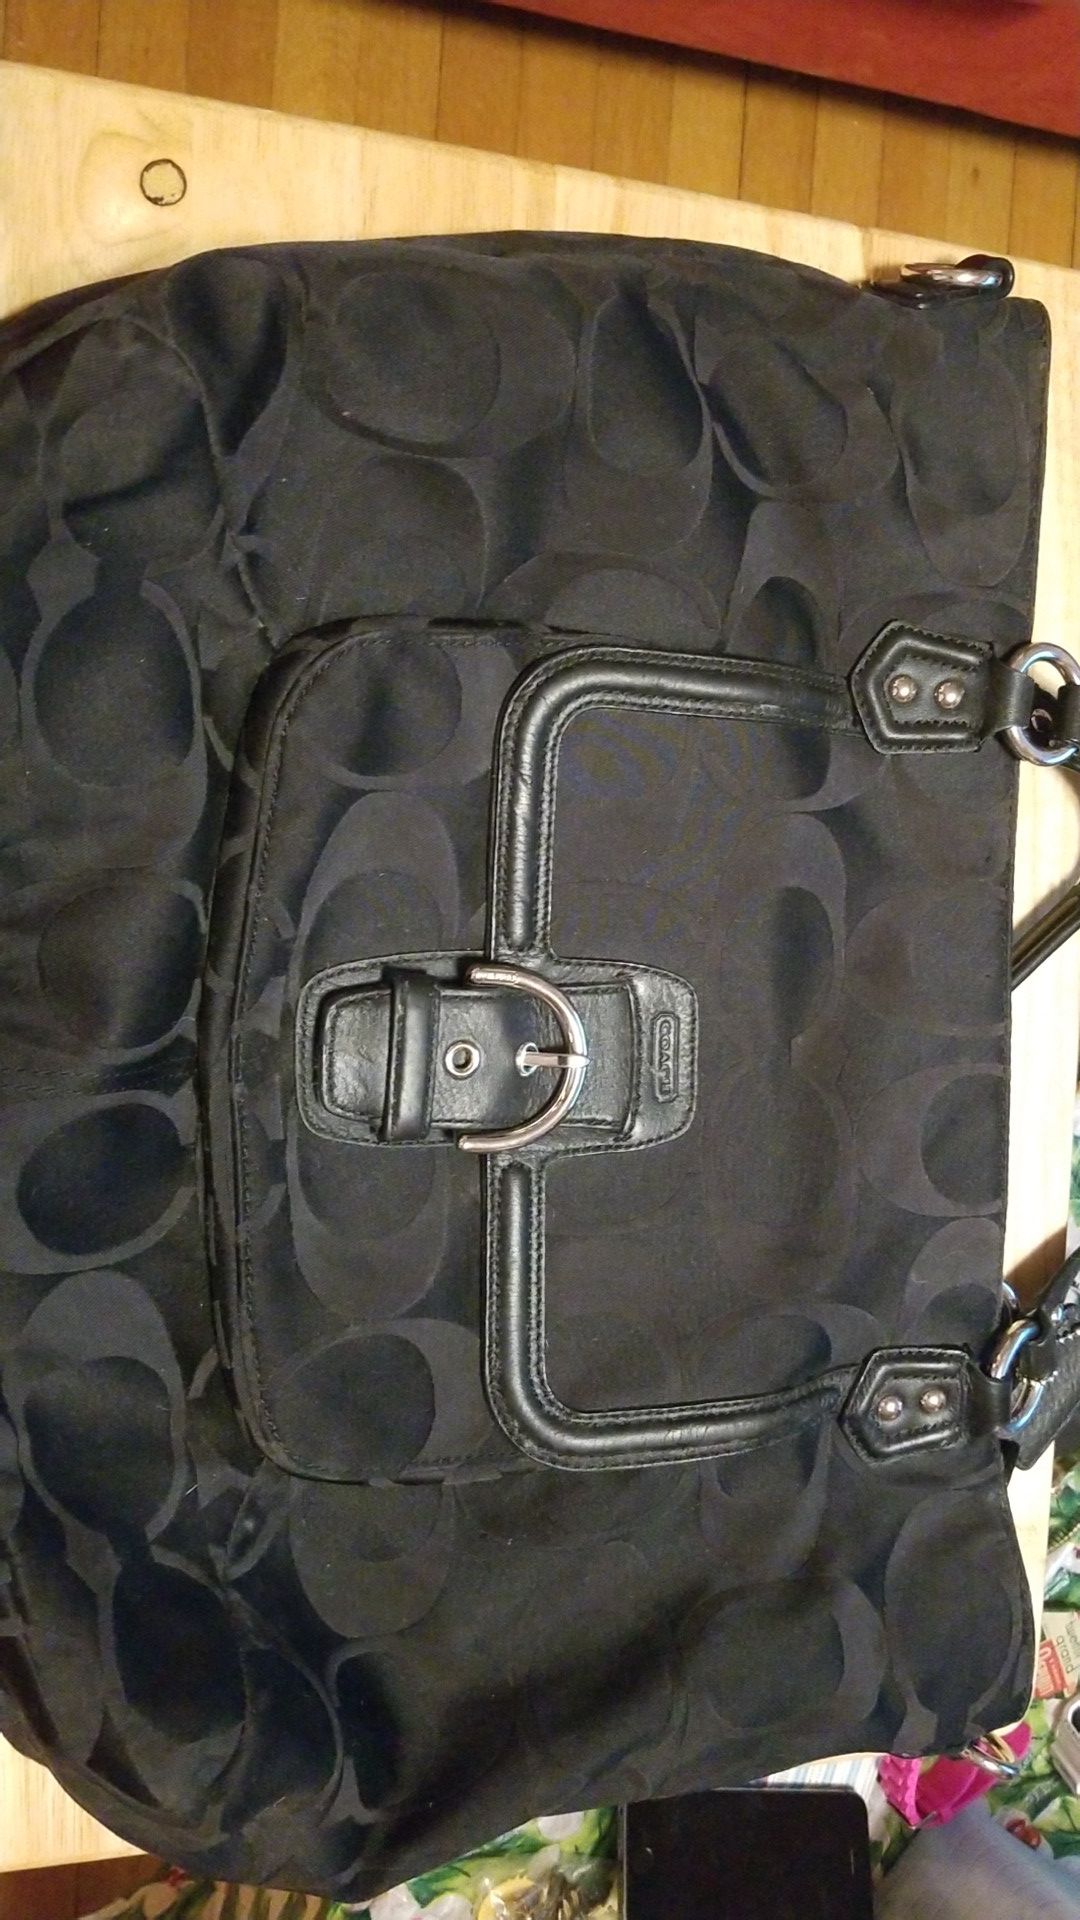 Coach bag